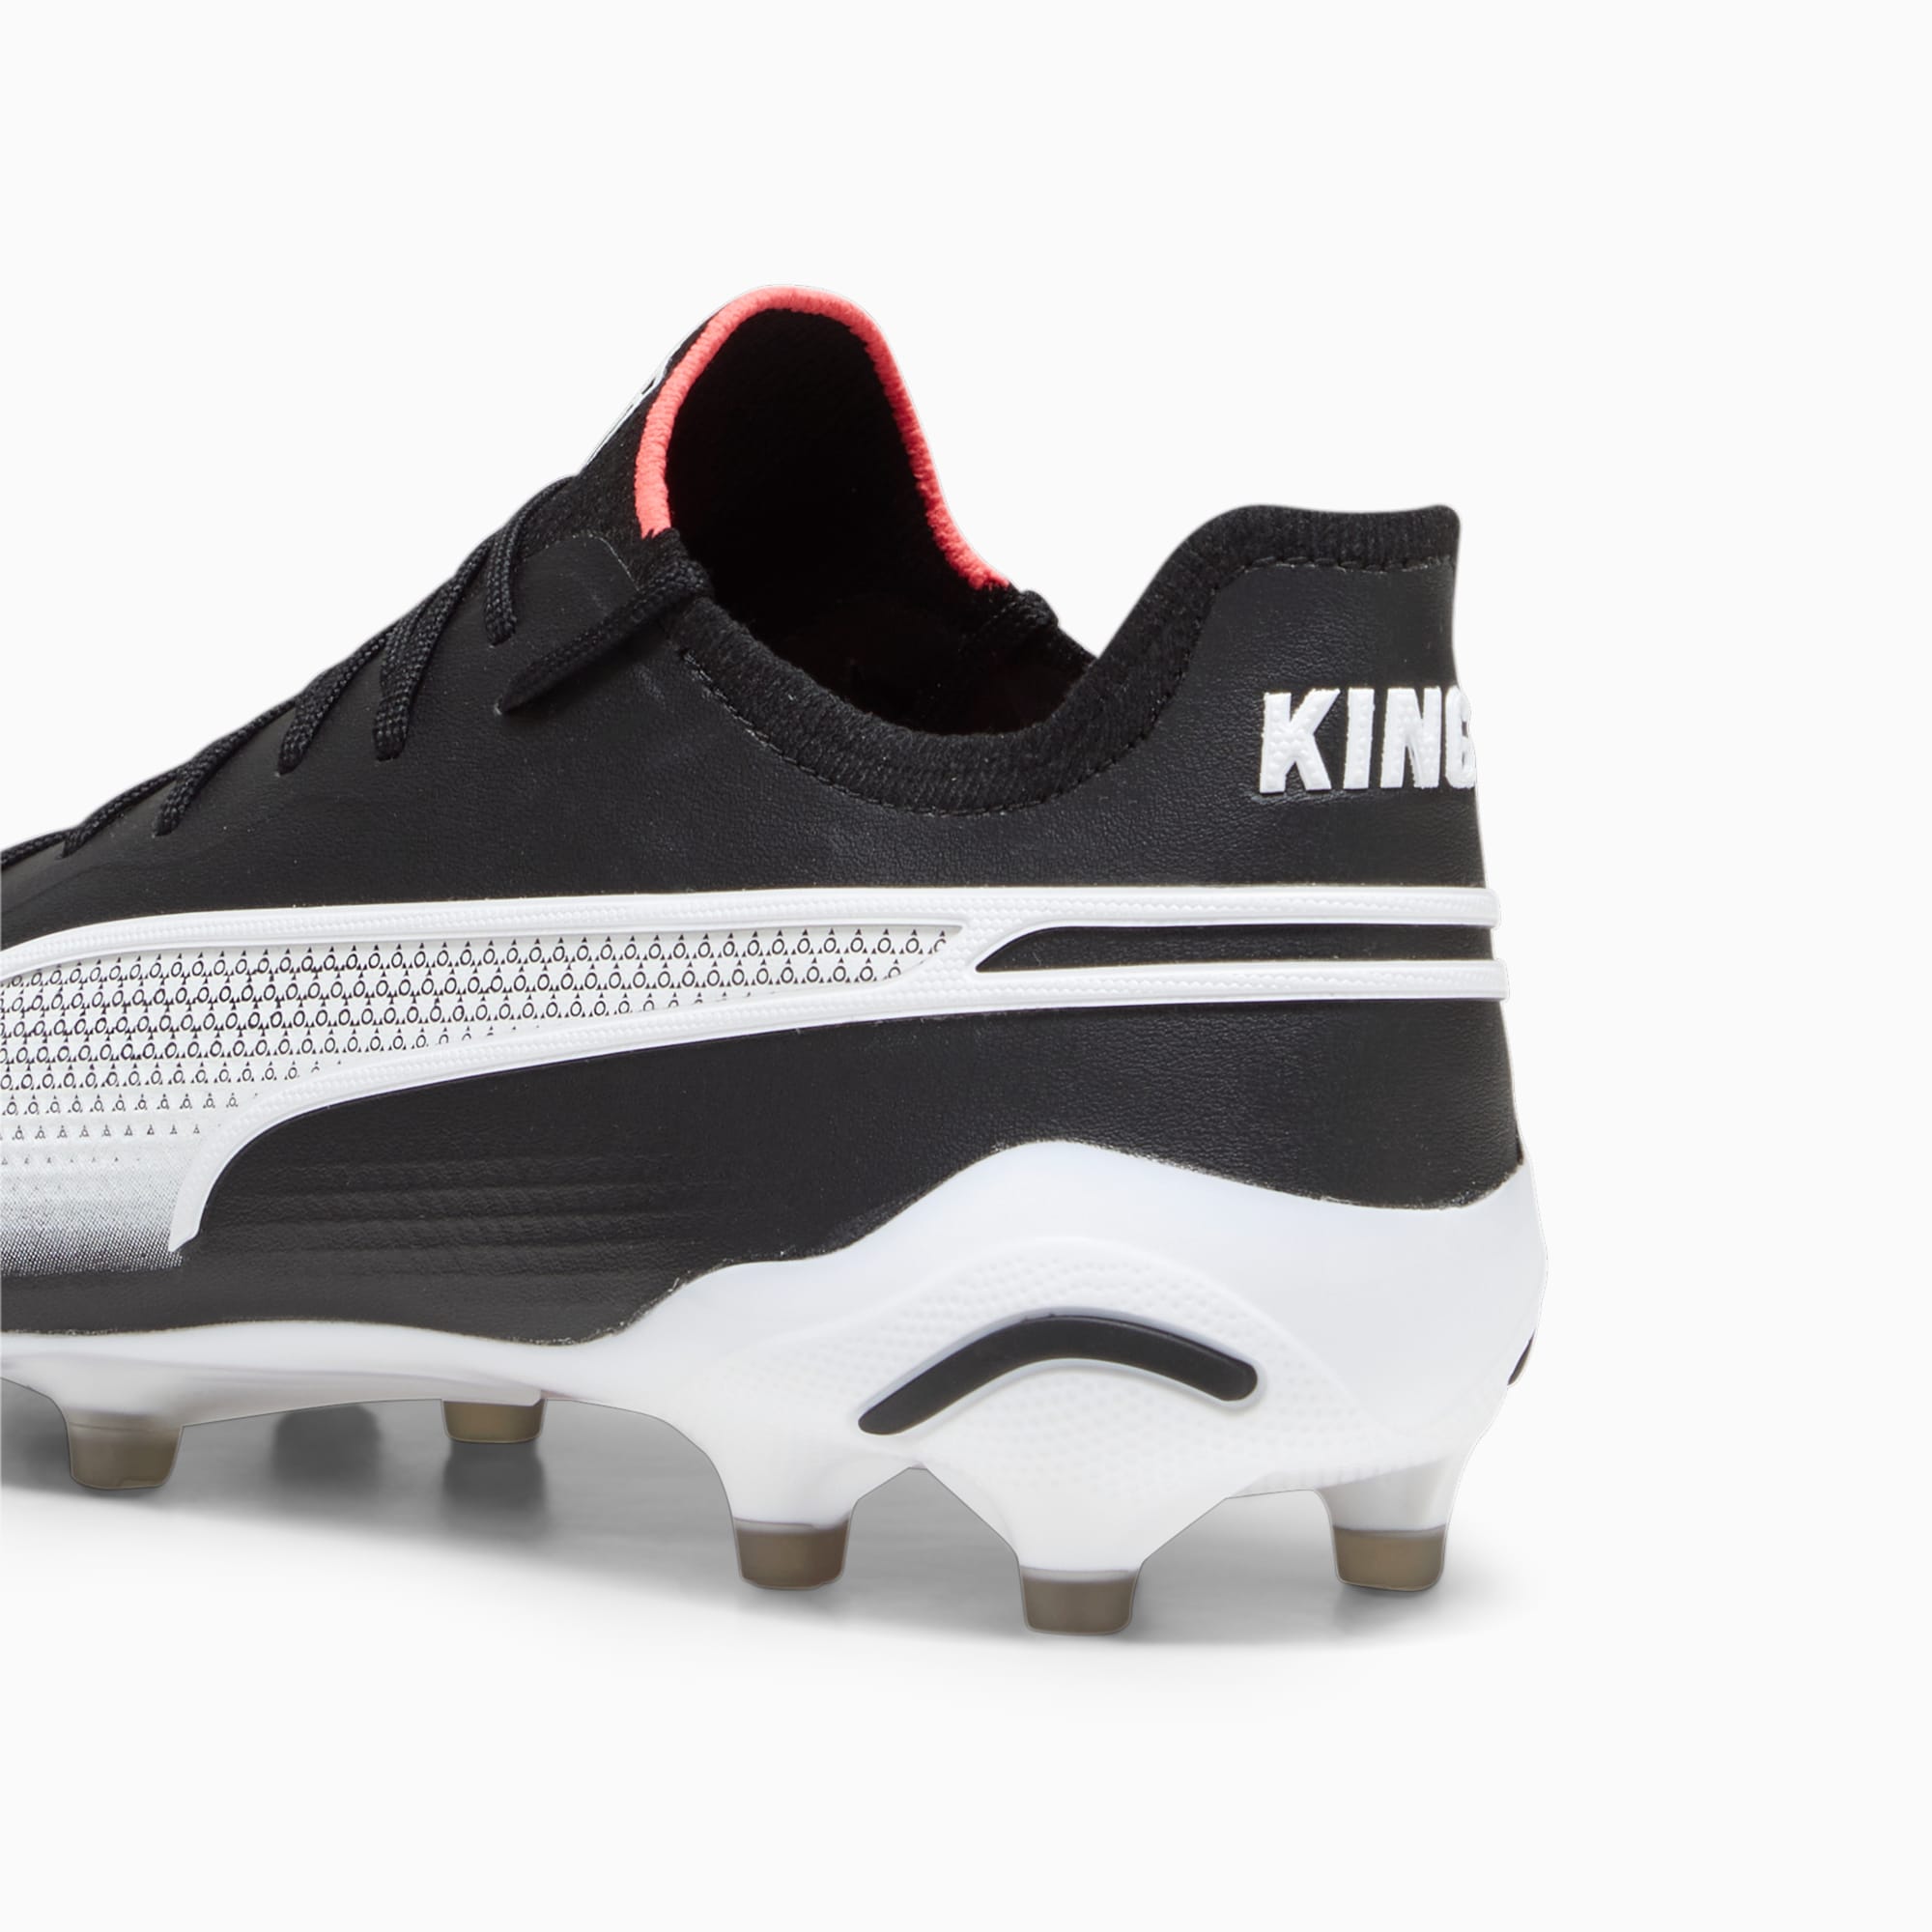 Puma X KIDSUPER Studios King FG Men's Soccer Shoes Hector